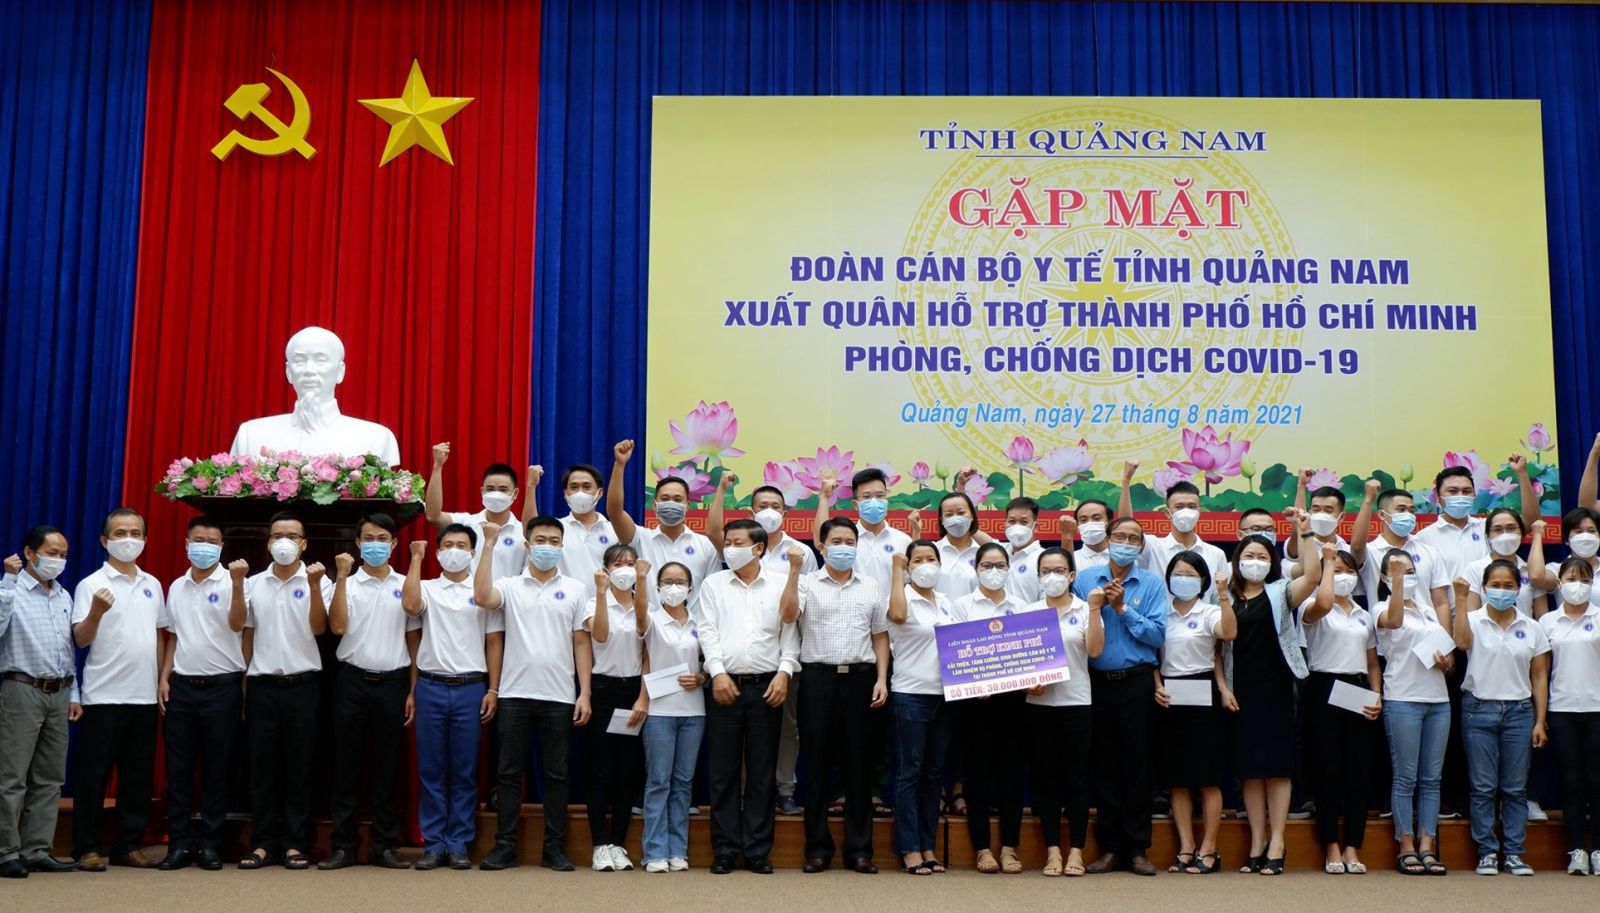 Tỉnh Quảng Nam tổ chức buôi lễ gặp mặt tiễn đoàn y bác sĩ lên đường hỗ trợ TP Hồ Chí Minh phòng, chống dịch Covid-19.